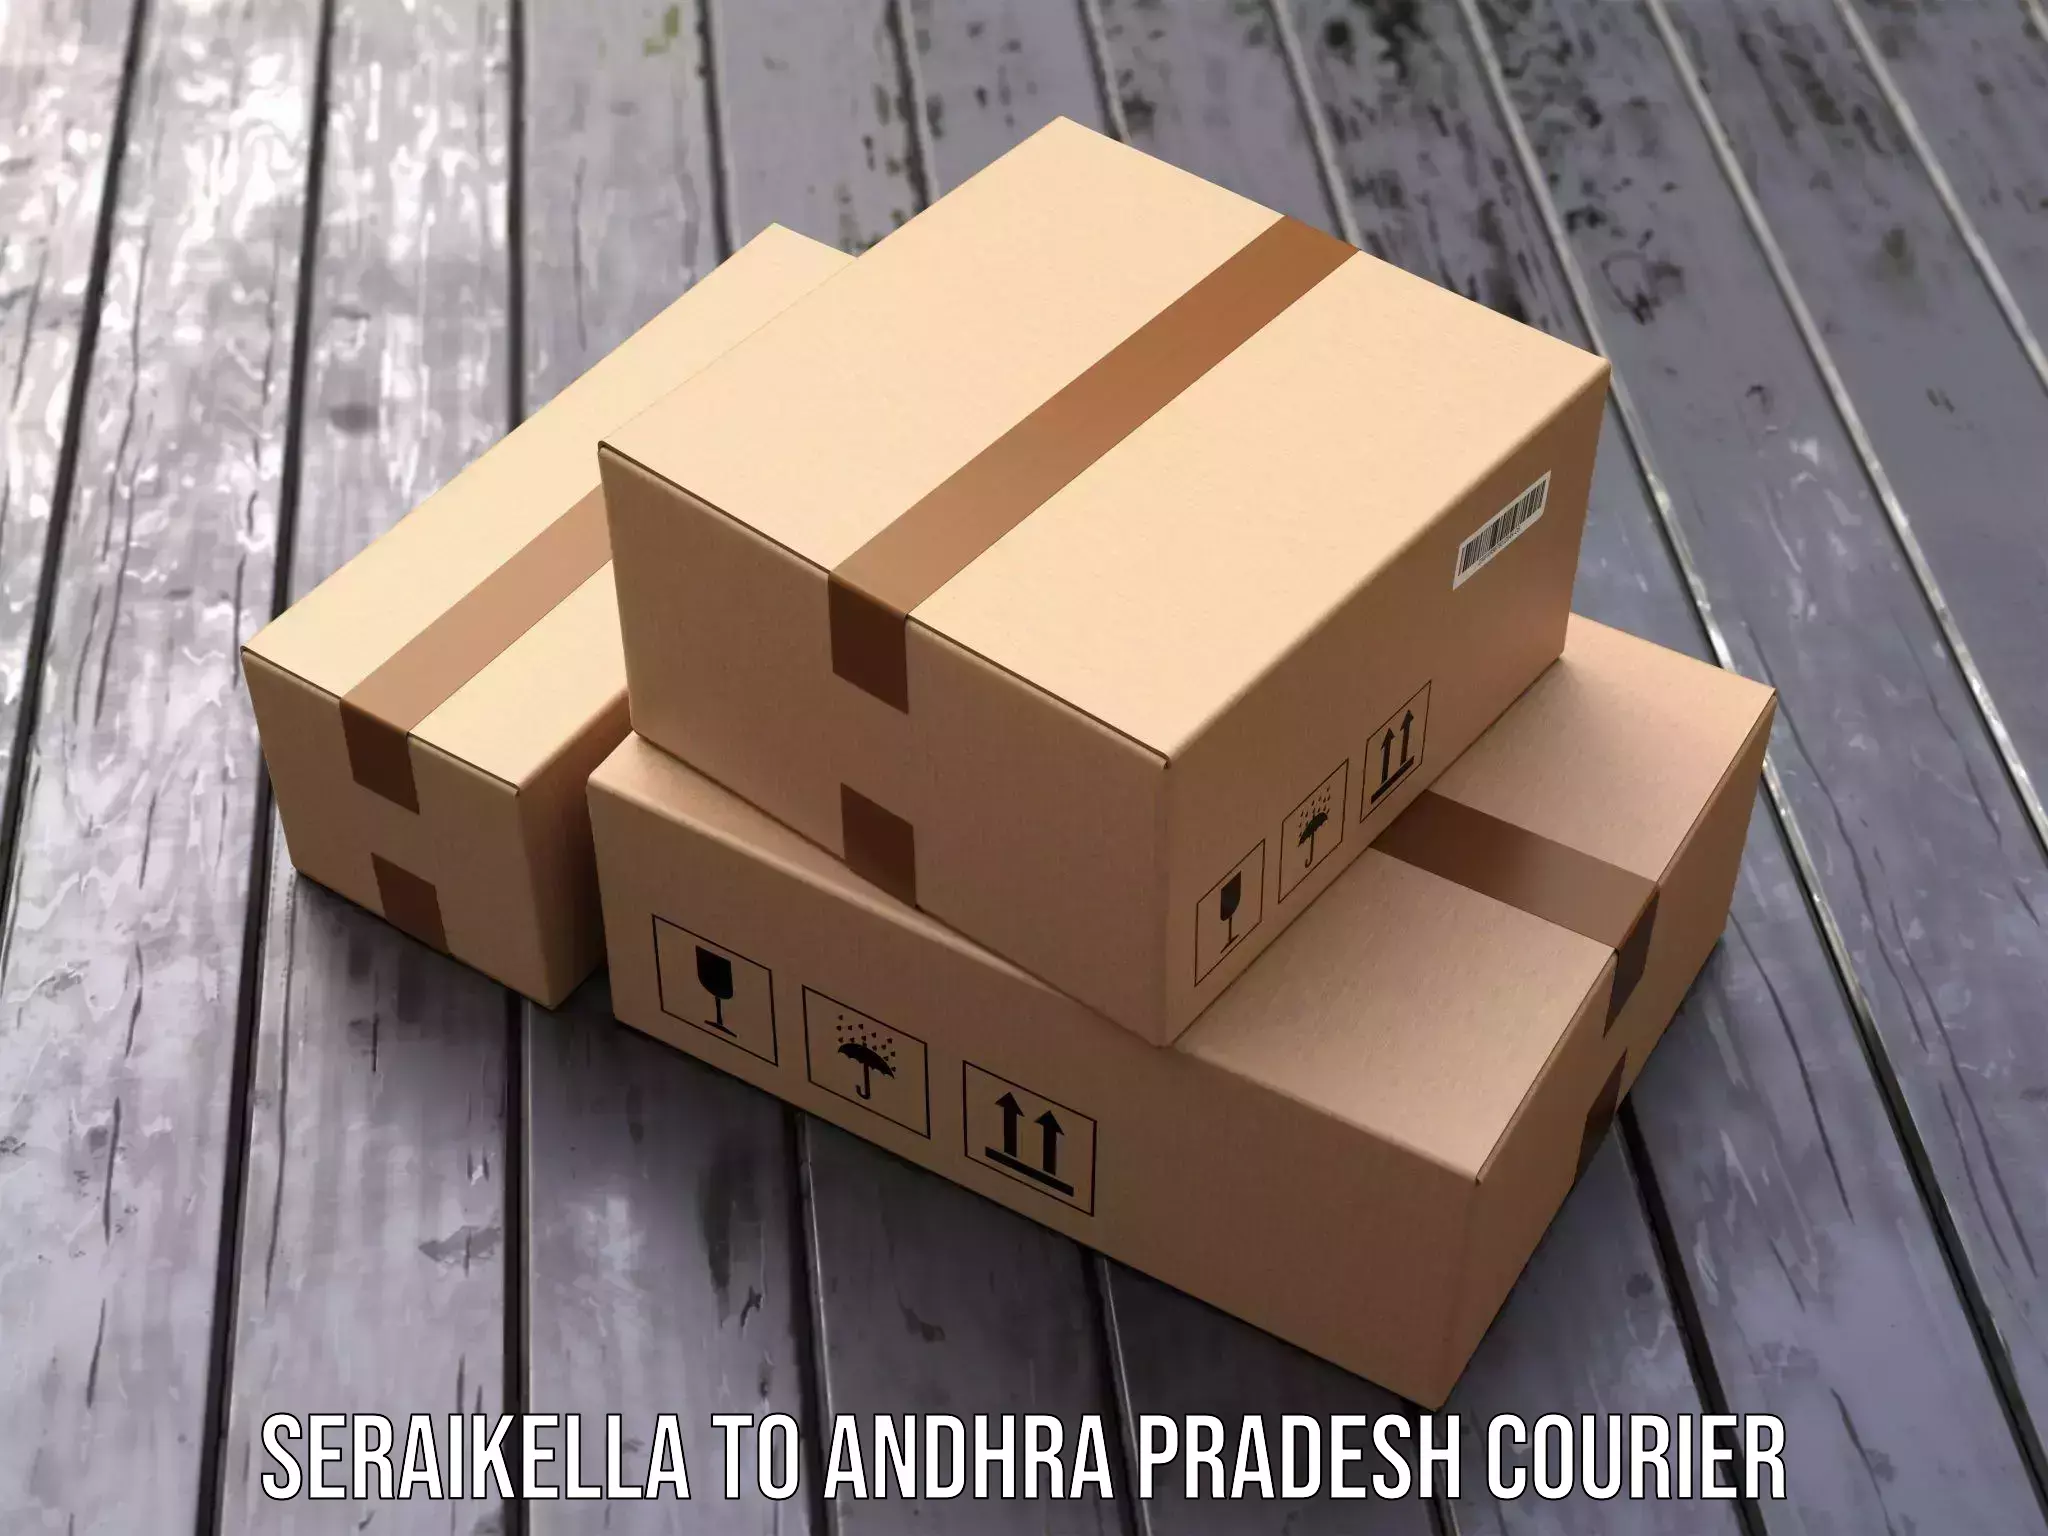 Express package handling Seraikella to Kandukur